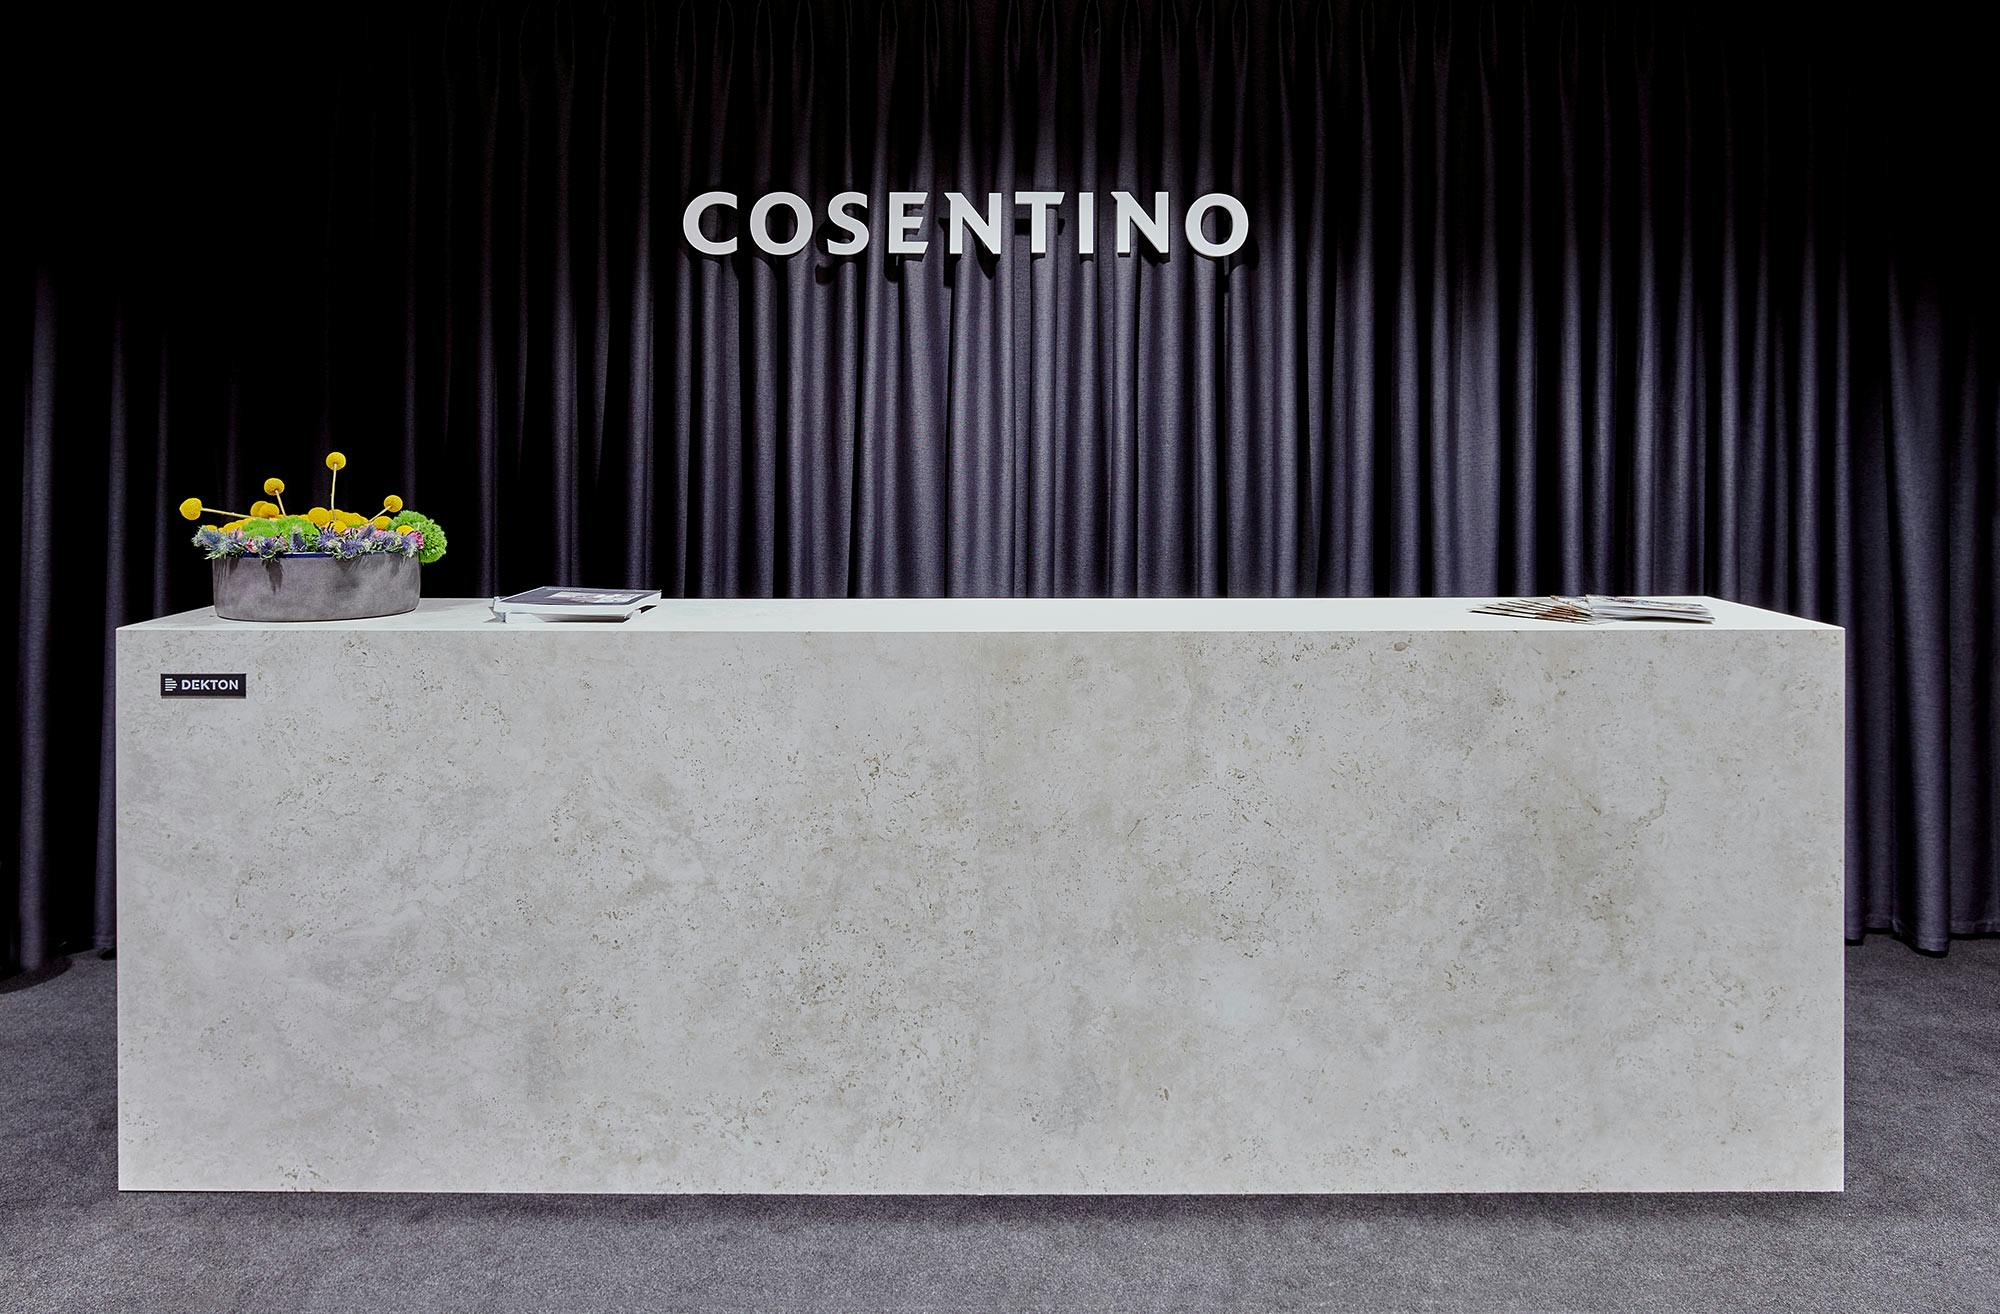 Image 54 of Cosentino Mutua Madrid006 dEKTO SABBIA 1.jpg?auto=format%2Ccompress&ixlib=php 3.3 in A contemporary public toilet design inspired by Roman public baths - Cosentino